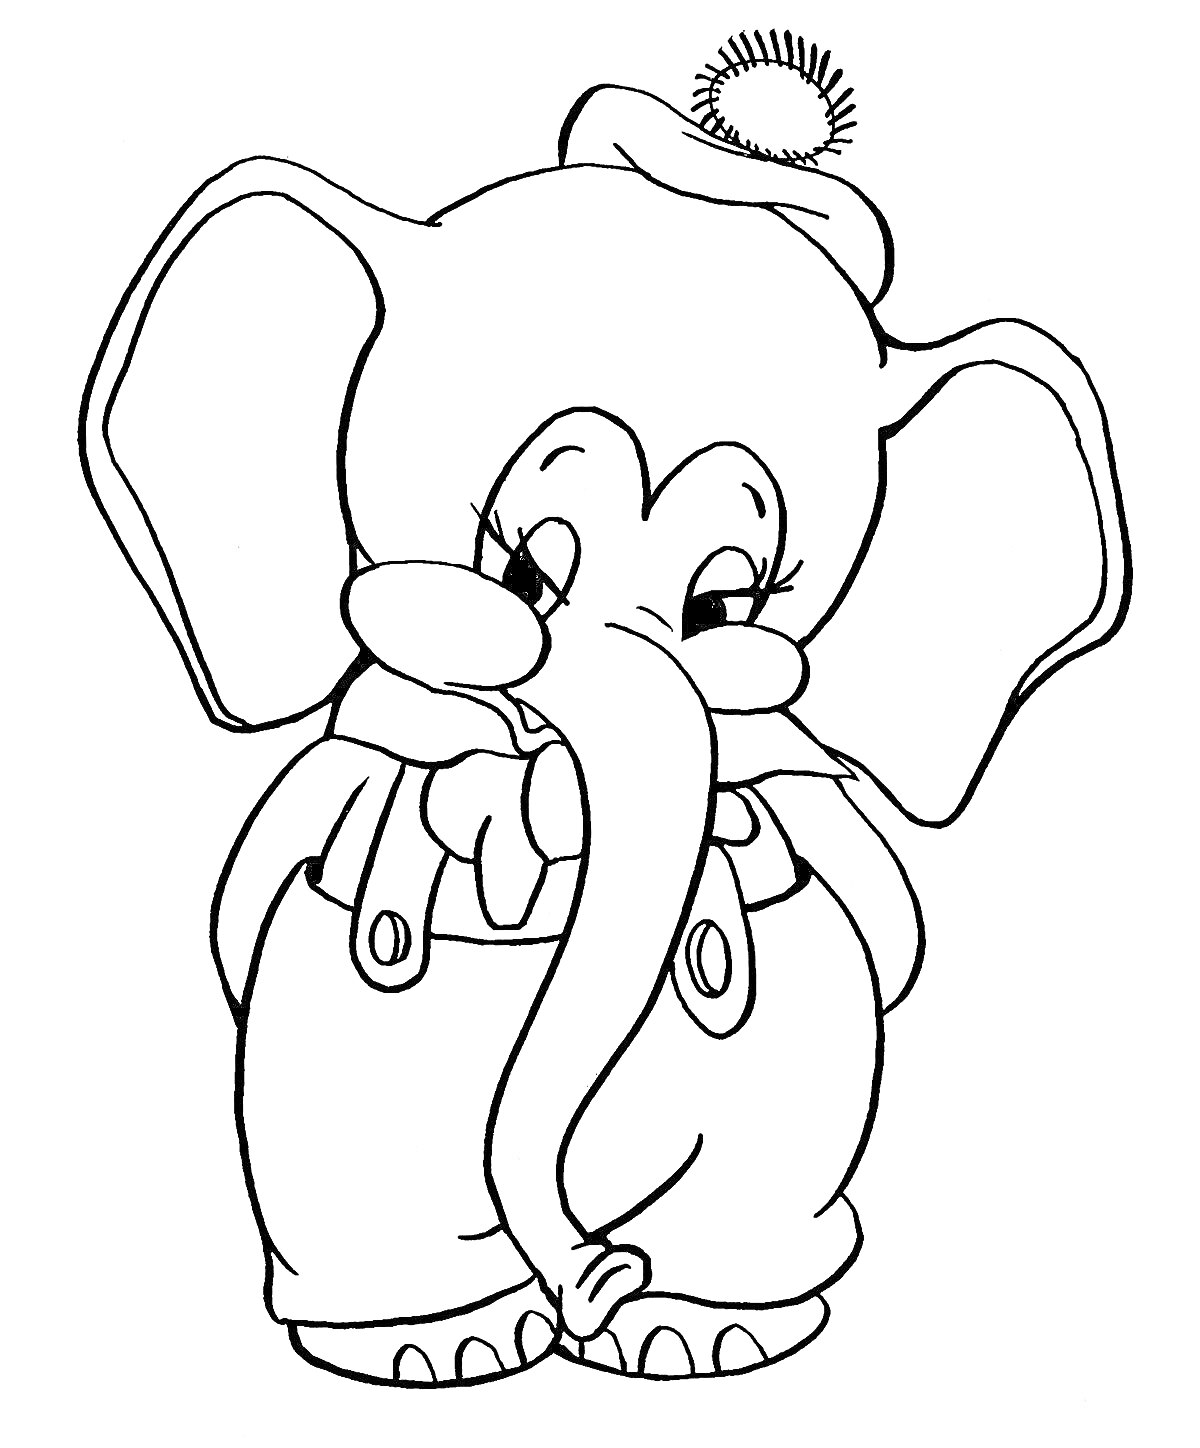 Раскраска Слон в шляпе и комбинезоне с бантиком